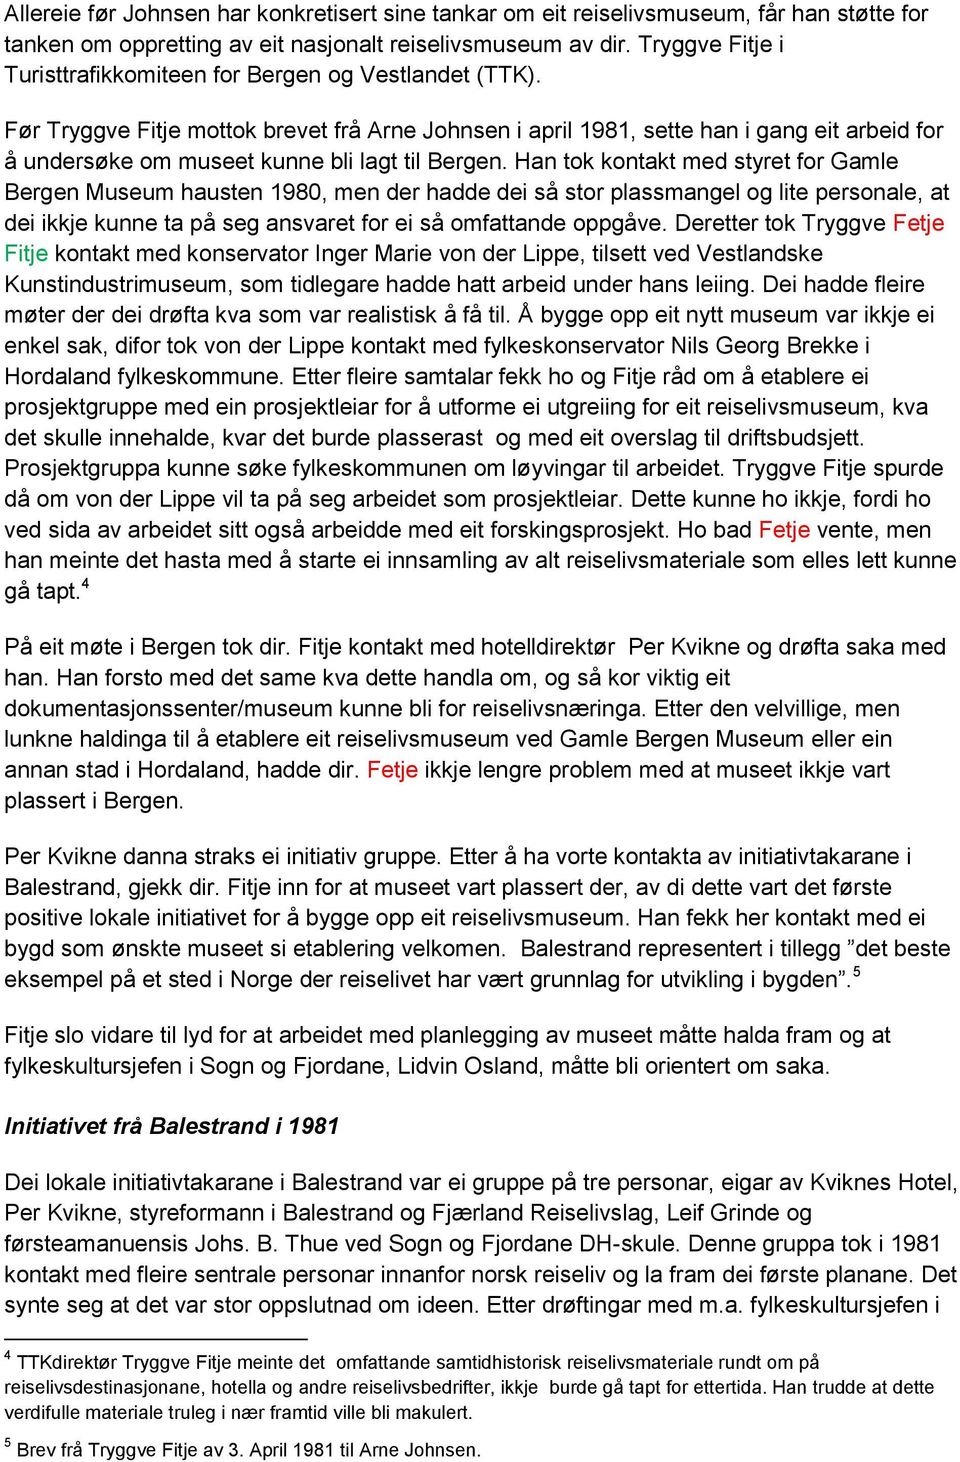 Før Tryggve Fitje mottok brevet frå Arne Johnsen i april 1981, sette han i gang eit arbeid for å undersøke om museet kunne bli lagt til Bergen.